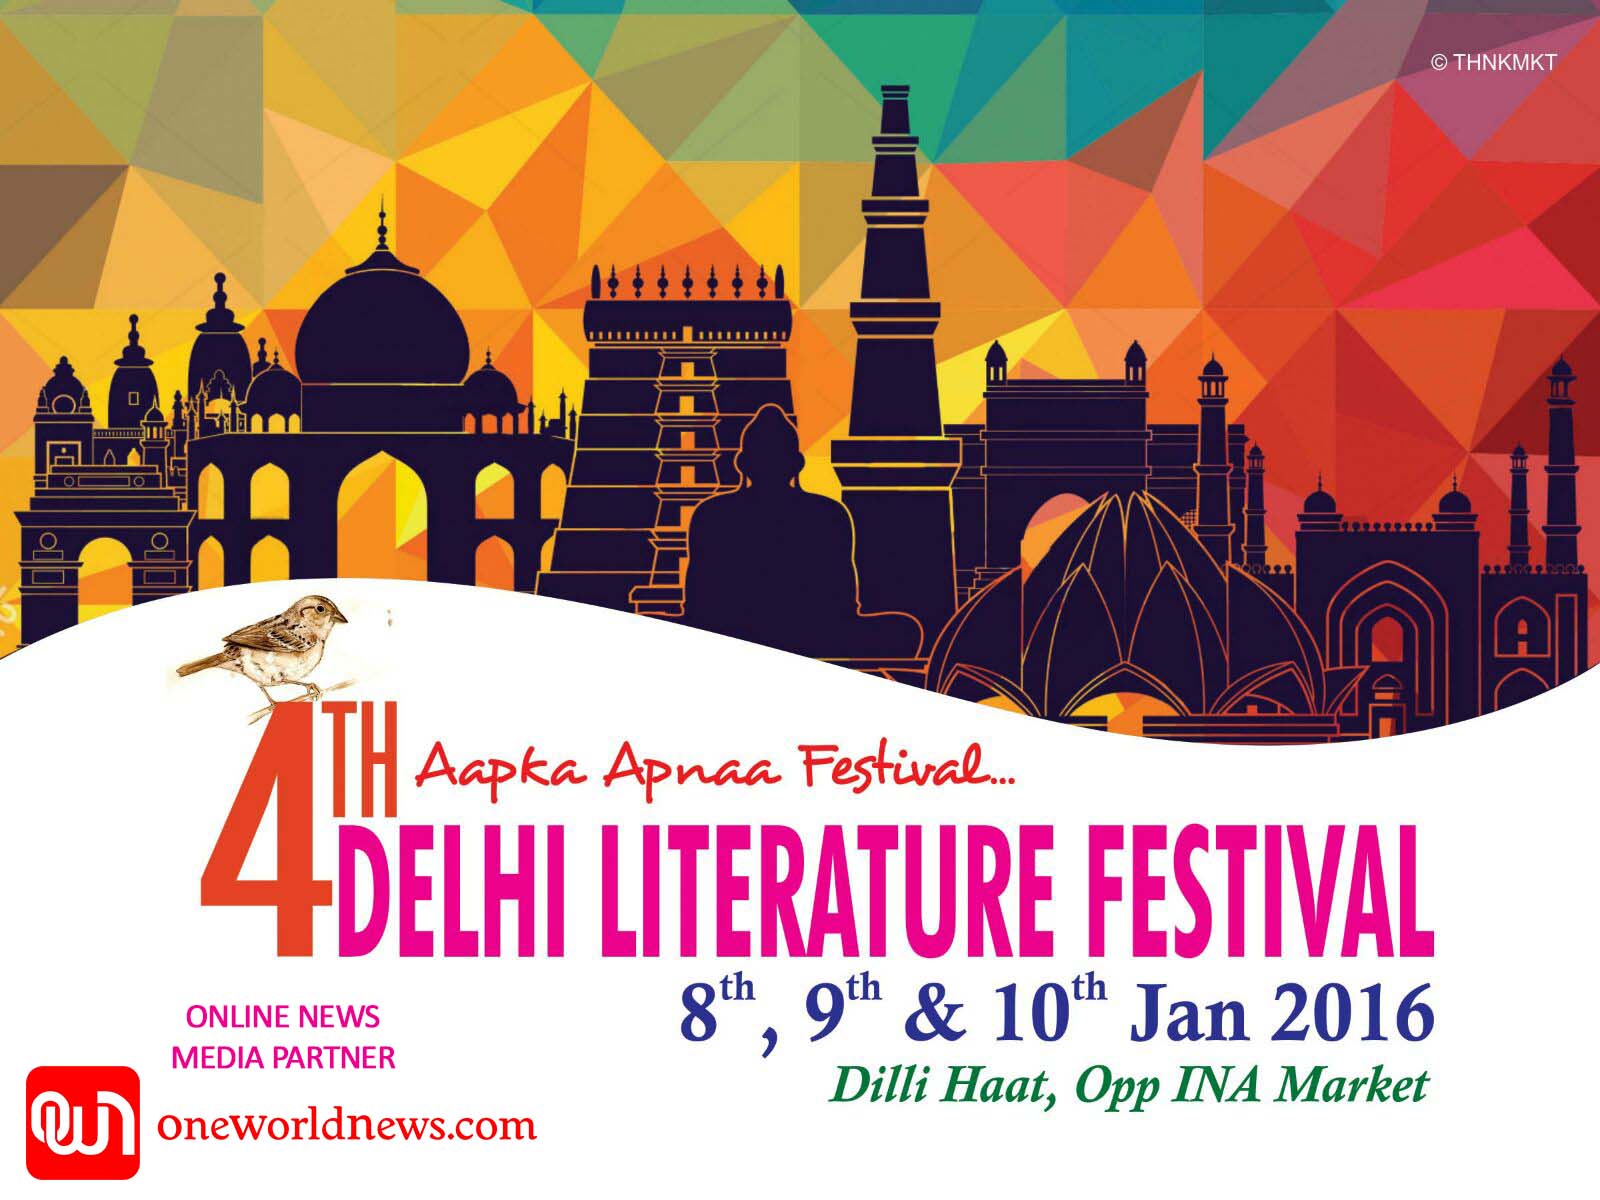 4th DELHI LITERATURE FESTIVAL